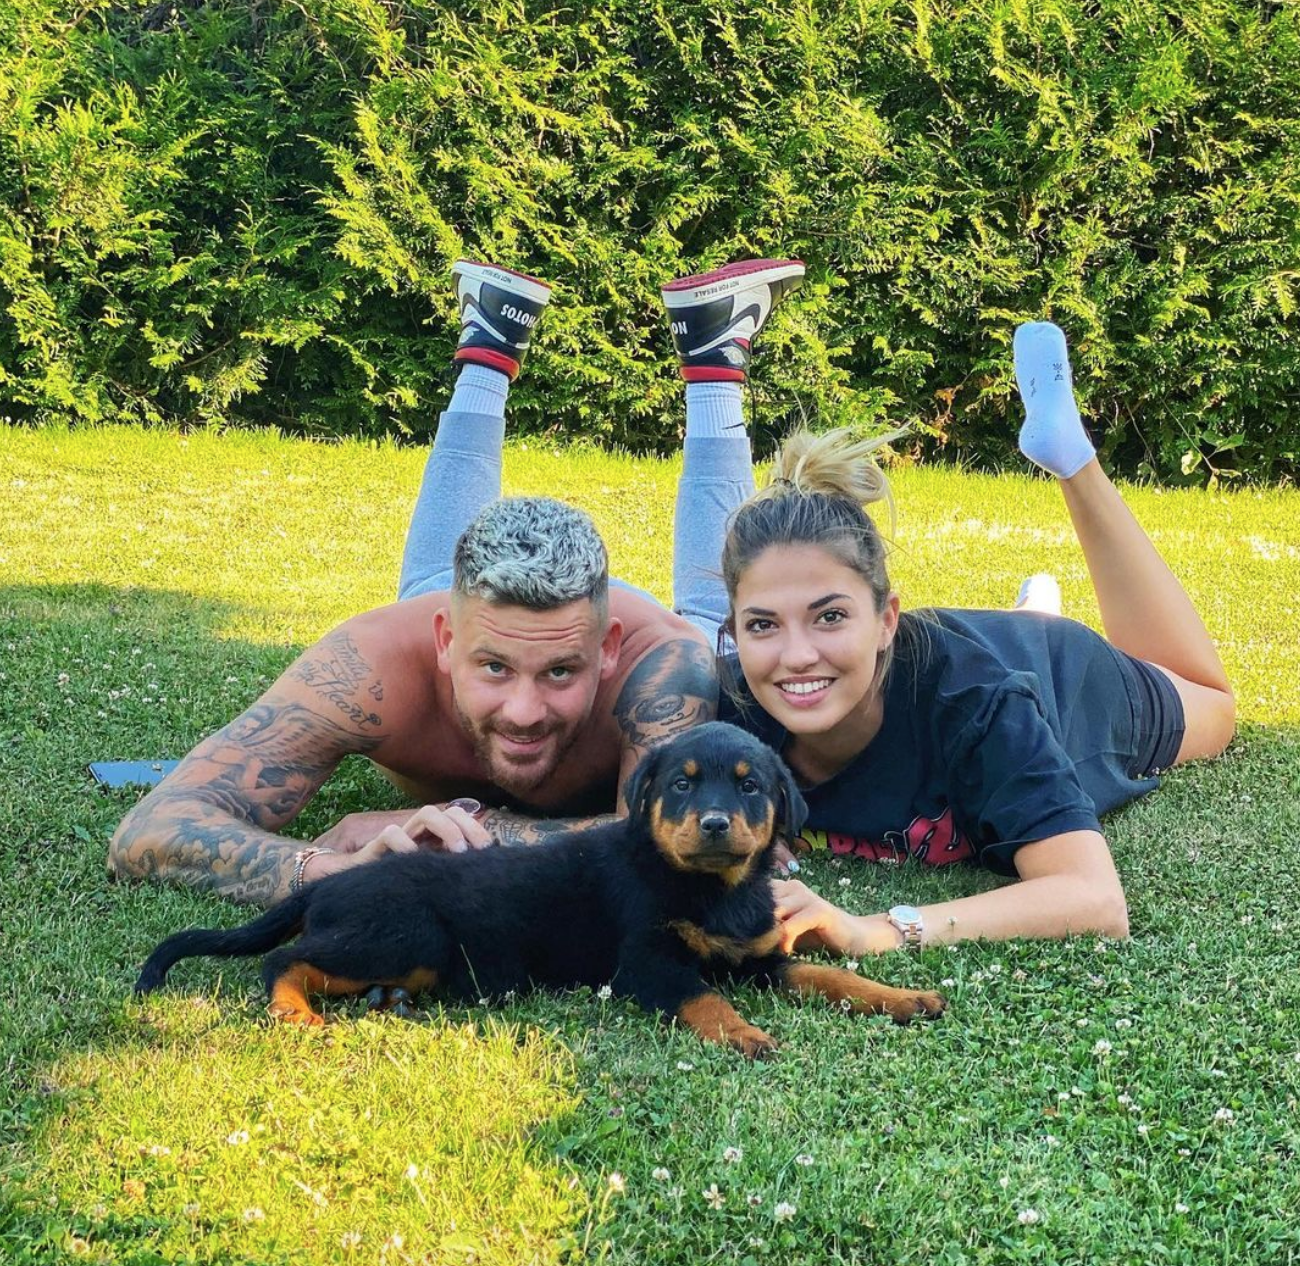  Angèle balance sur le couple formé par Raphaël Pépin et Tiffany @ Instagram